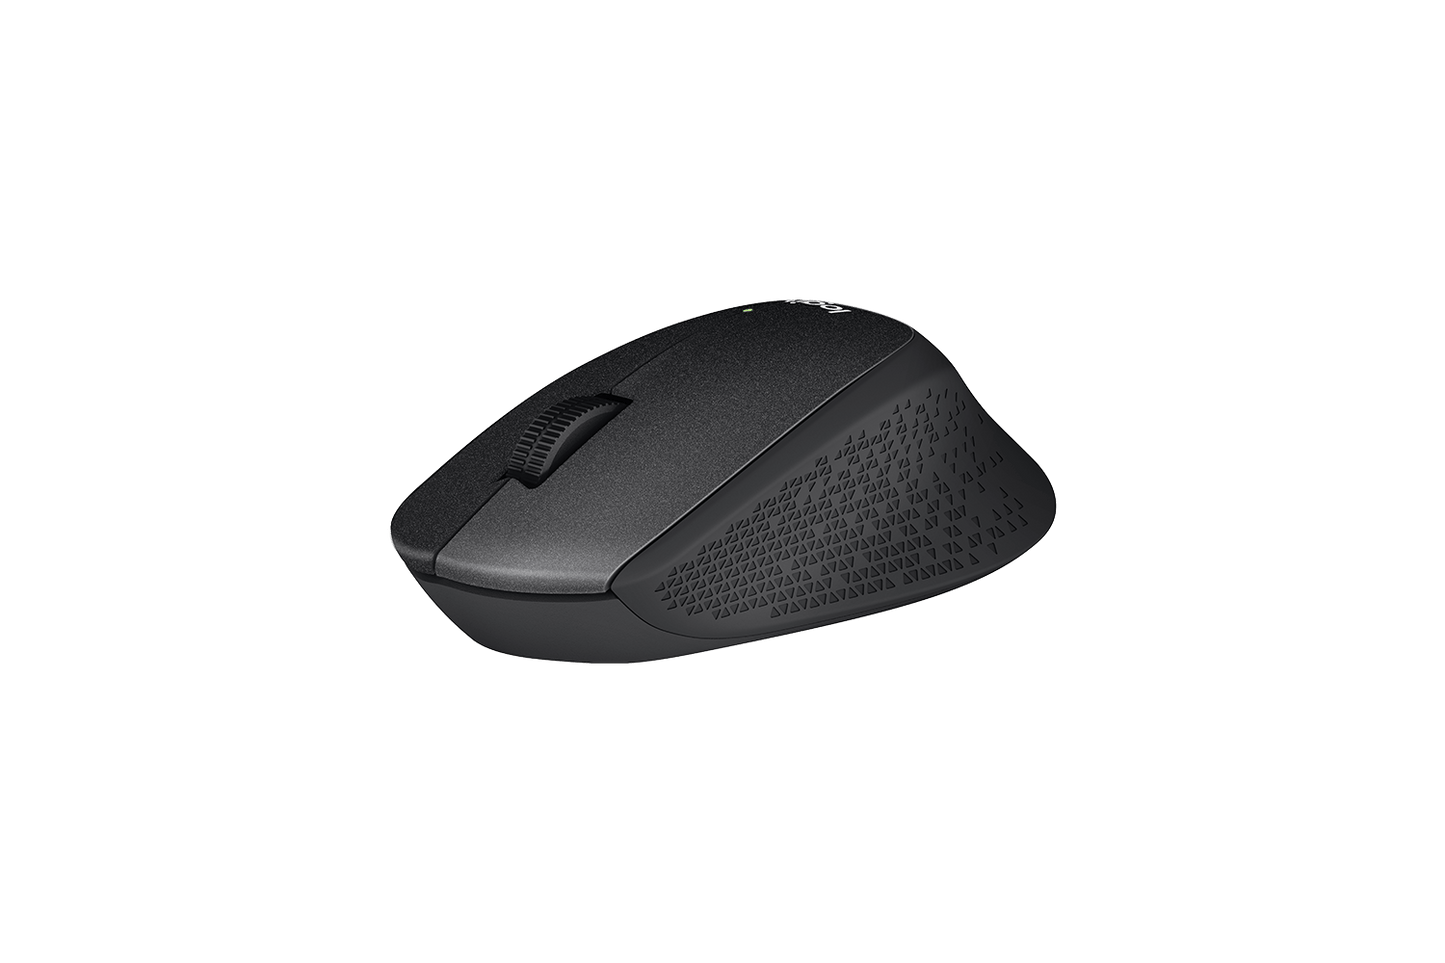 Logitech M331 Silent Plus Mouse Black